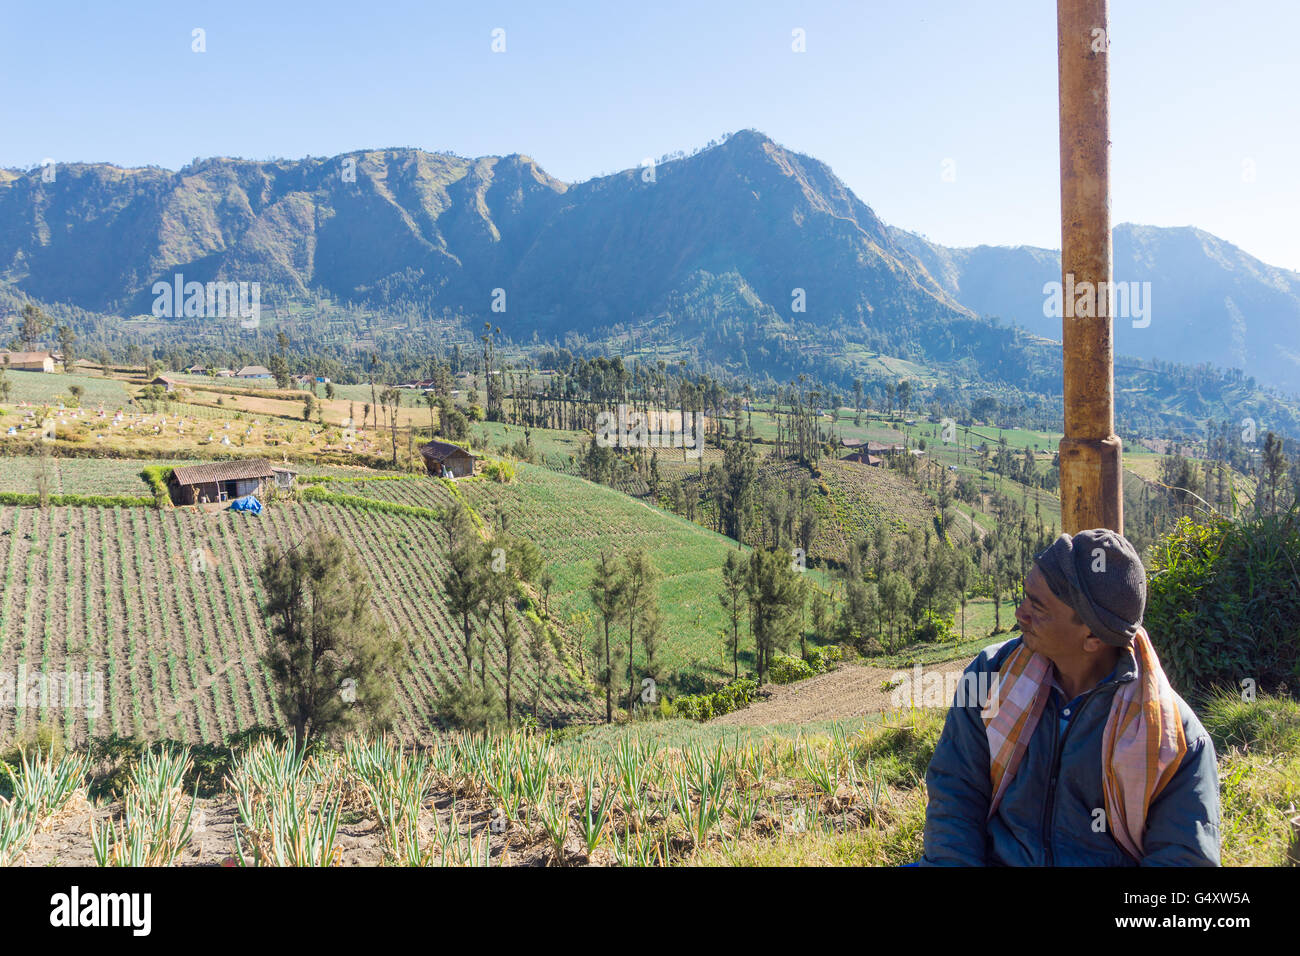 Indonesien, Java, Probolinggo, einheimischen Blick auf Felder in der vulkanischen Landschaft bei Sonnenschein Stockfoto